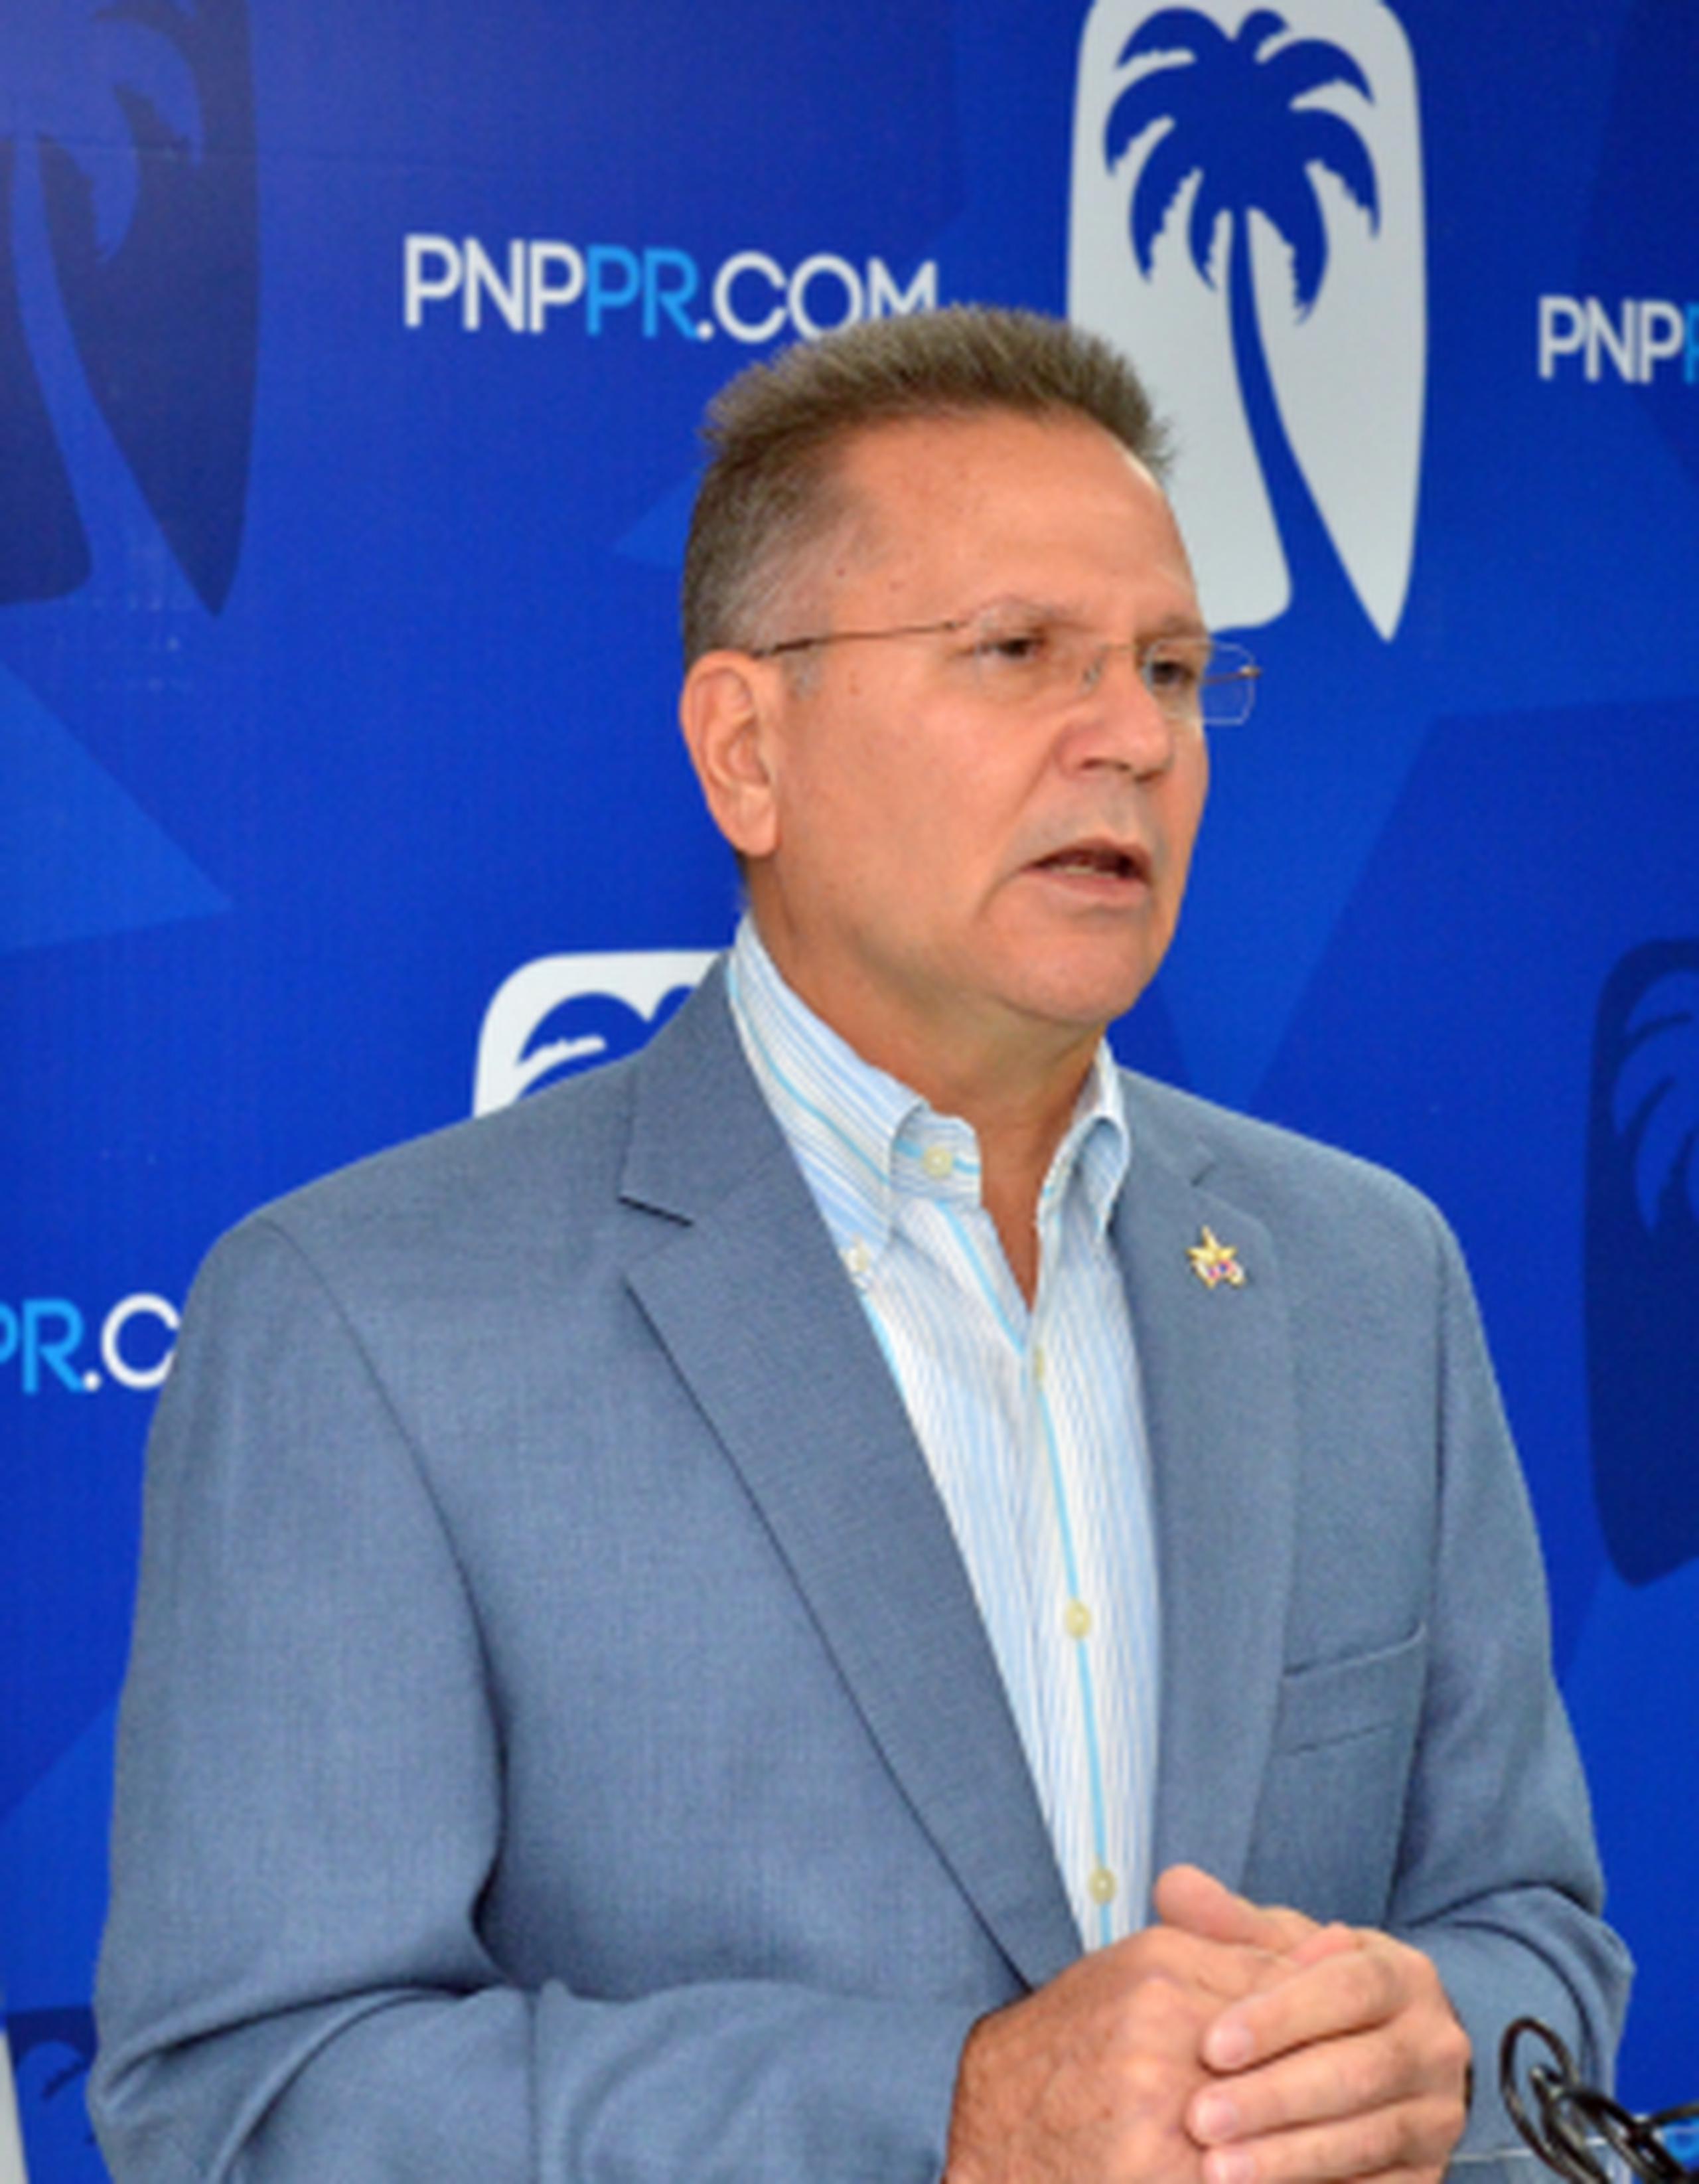 "Venir a perseguir a los alcaldes del PNP y no hacer lo propio con el alcalde popular de Guayanilla es un acto mezquino", dijo Aponte. (Archivo)